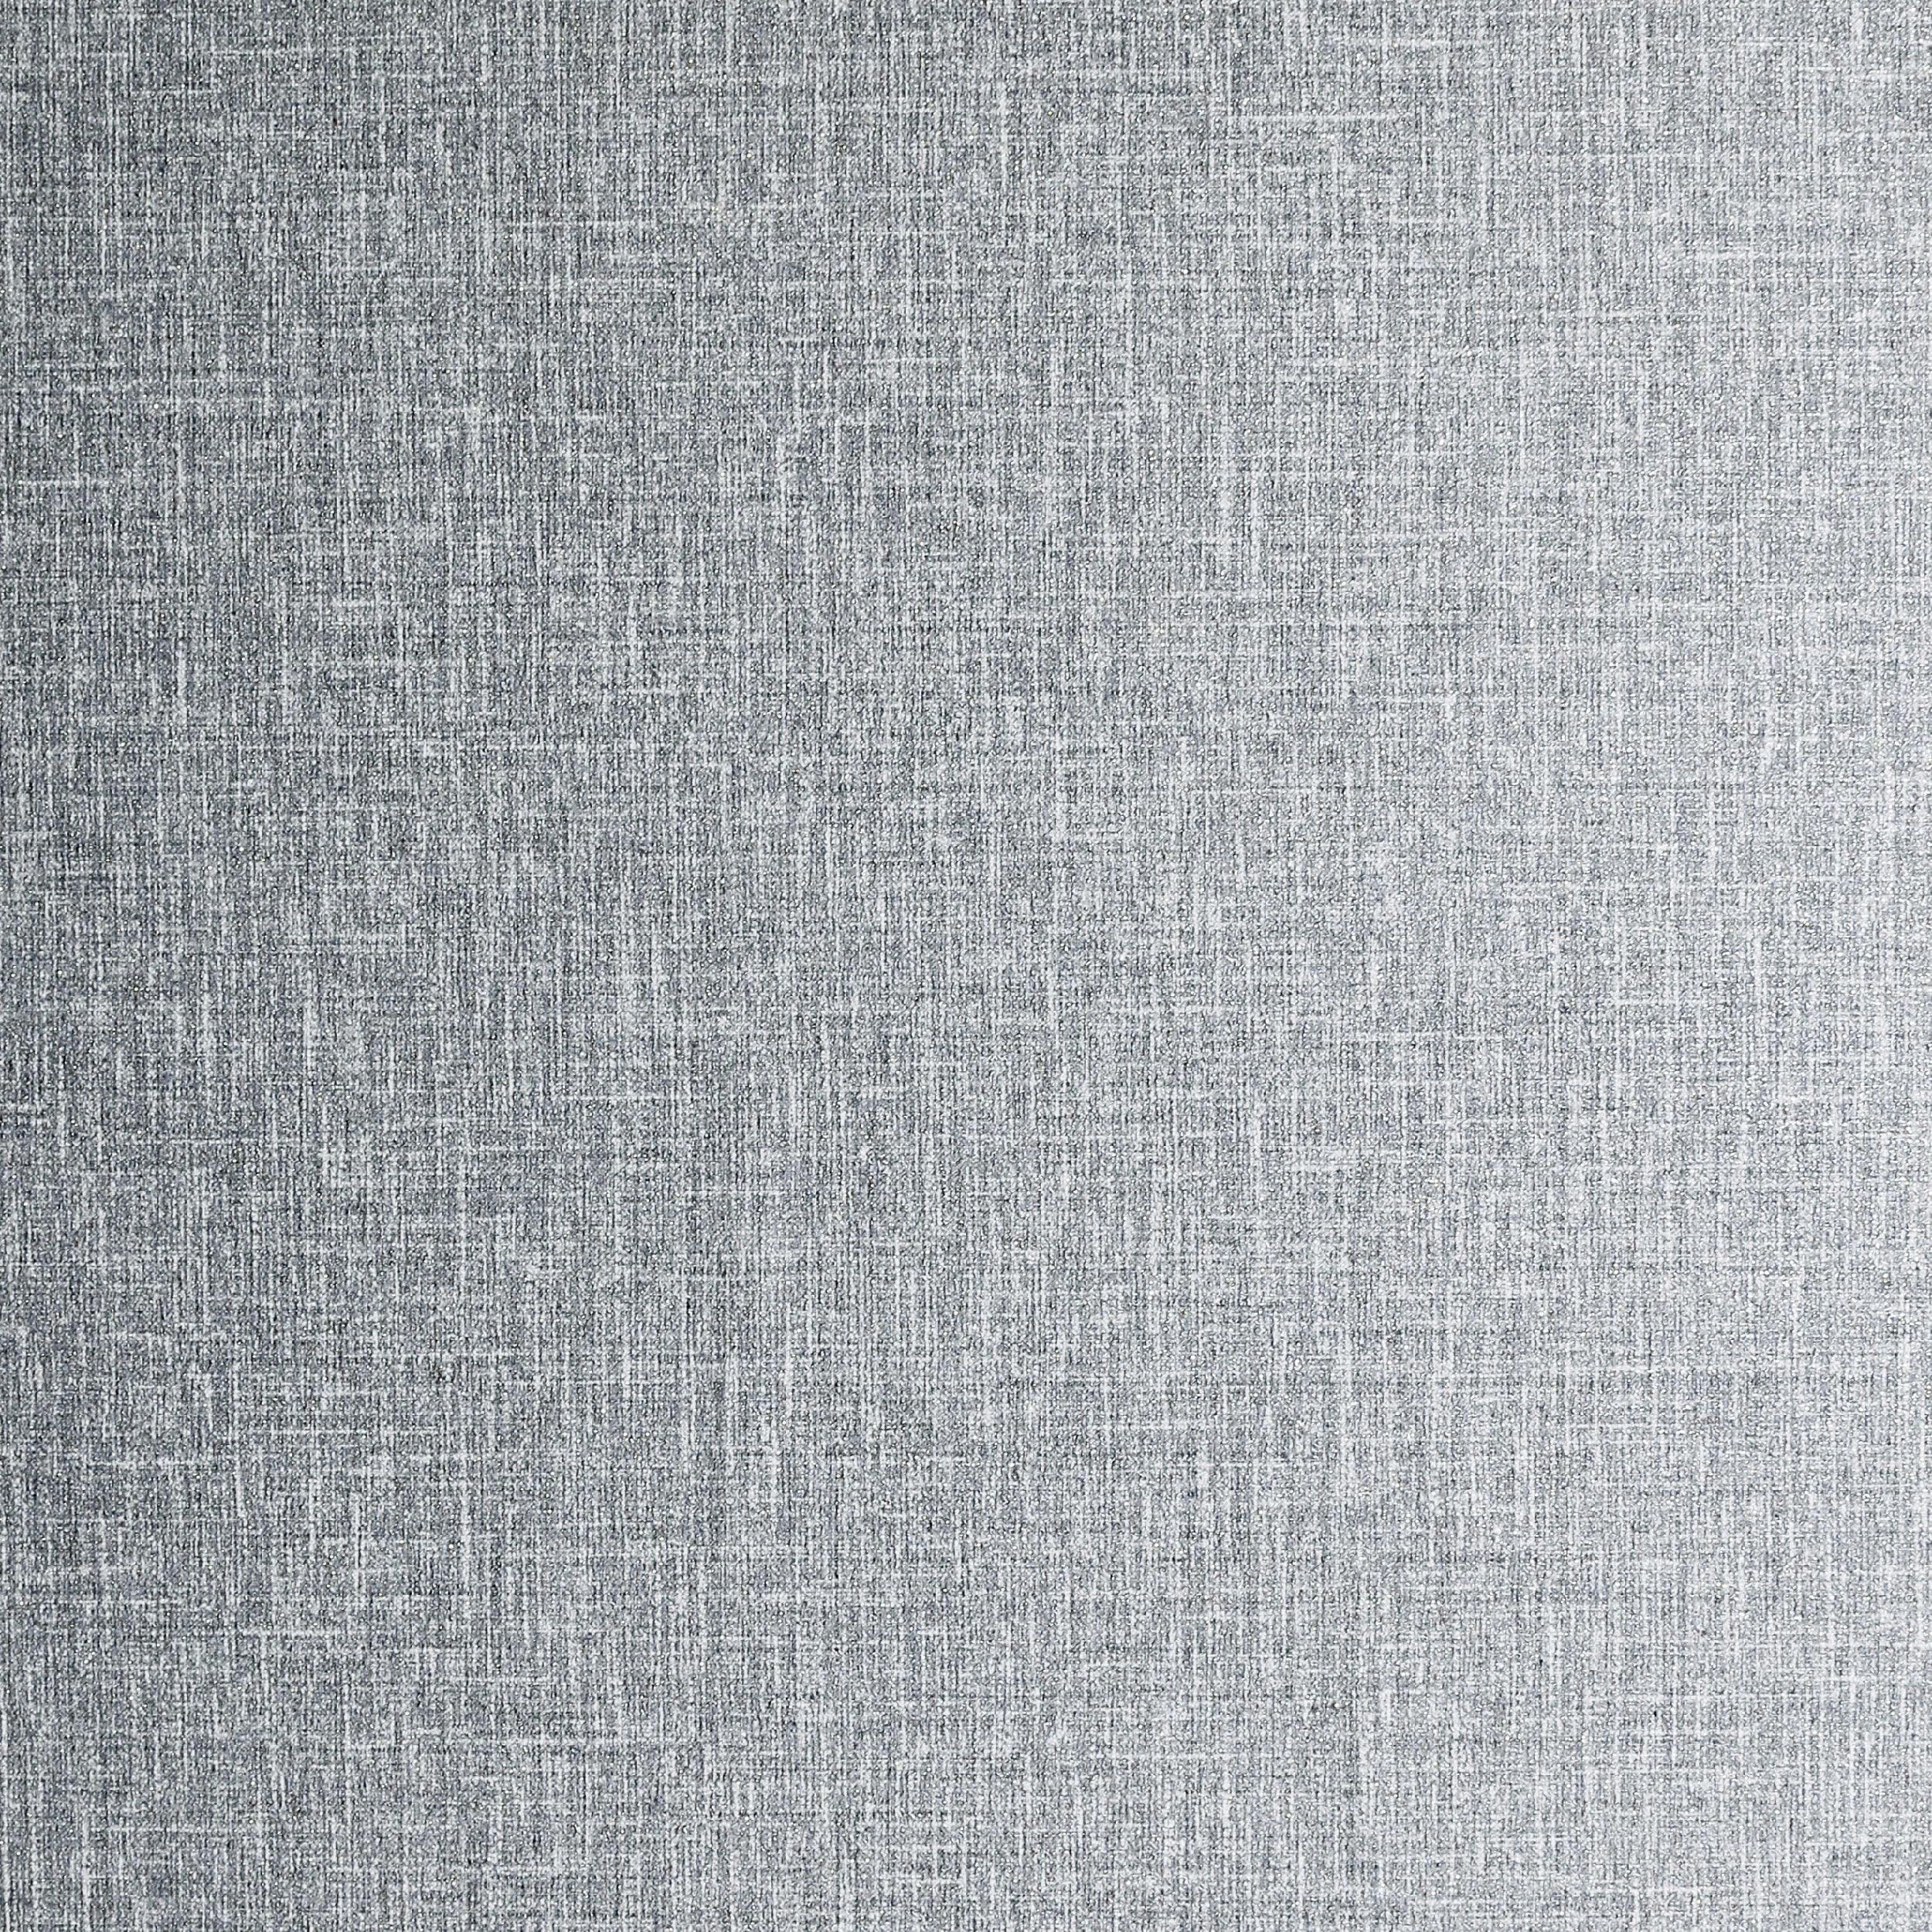 Luxe Hessian Mid Grey Textured Vinyl Wallpaper Roll